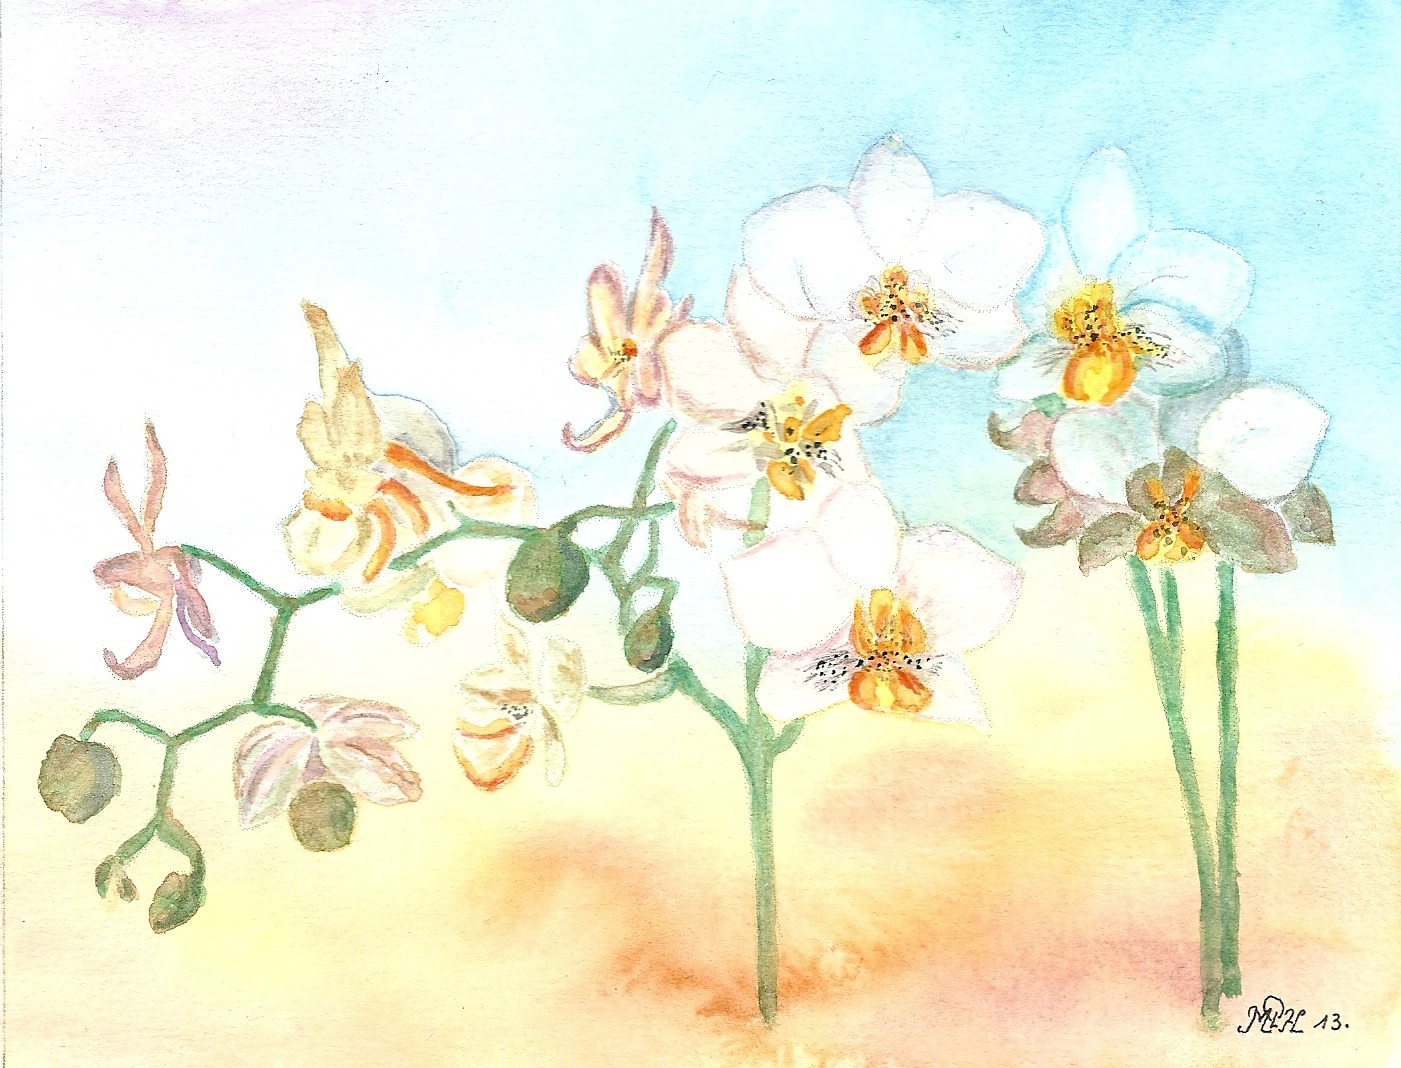 Aquarelle n°40: "Orchidées"